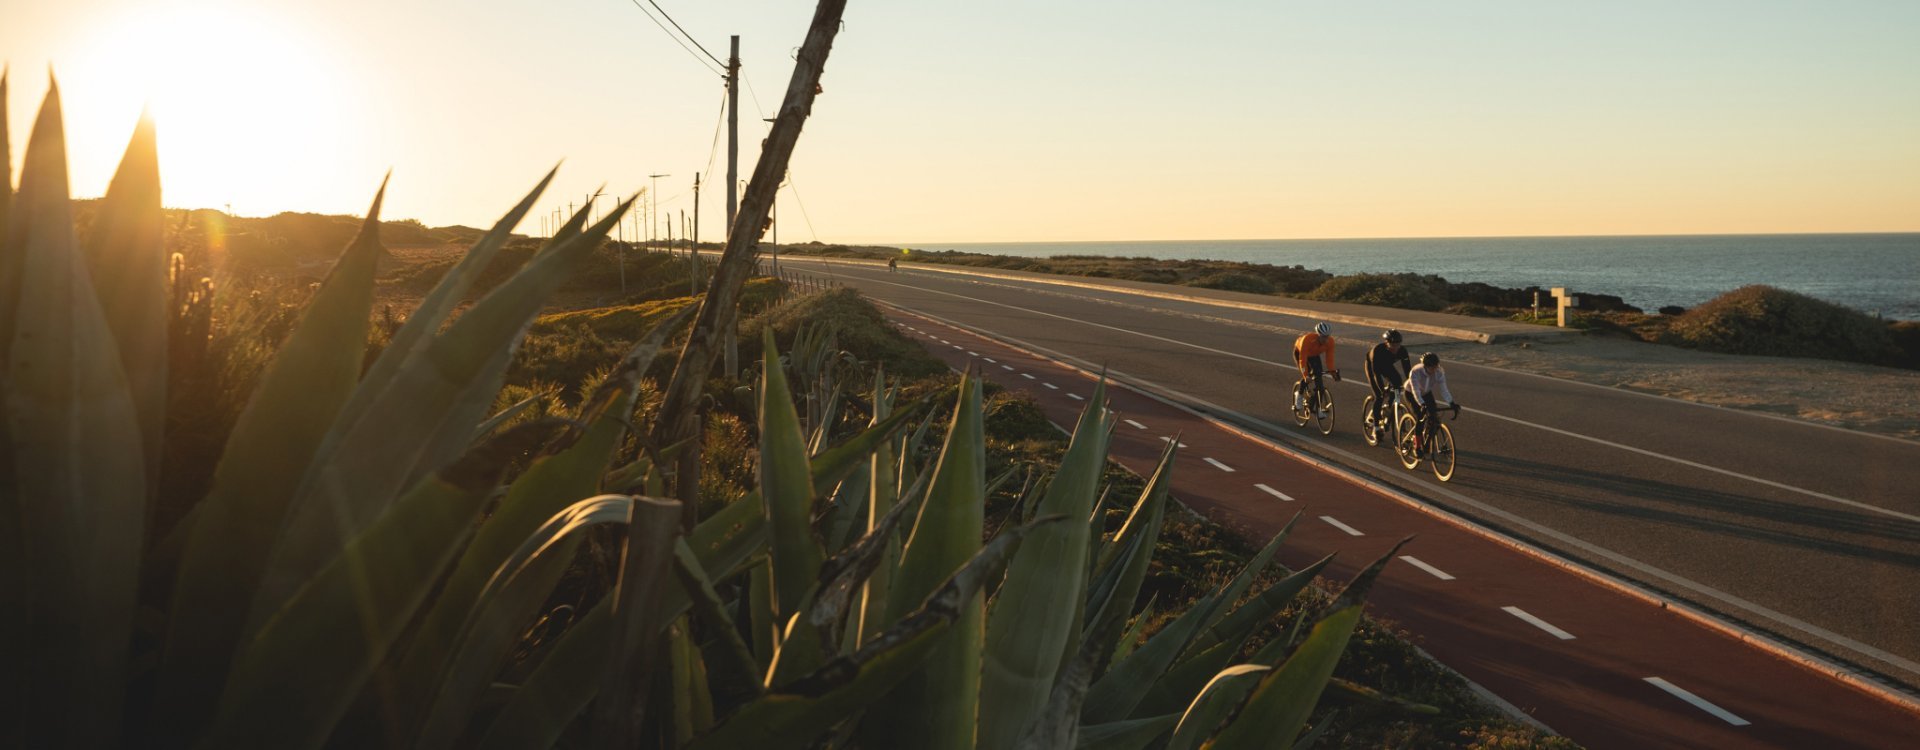 Laura, Markus y Sergej de bc montando en sus bicis de ruta por una carretera cercana a la costa. Puesta de sol al fondo.